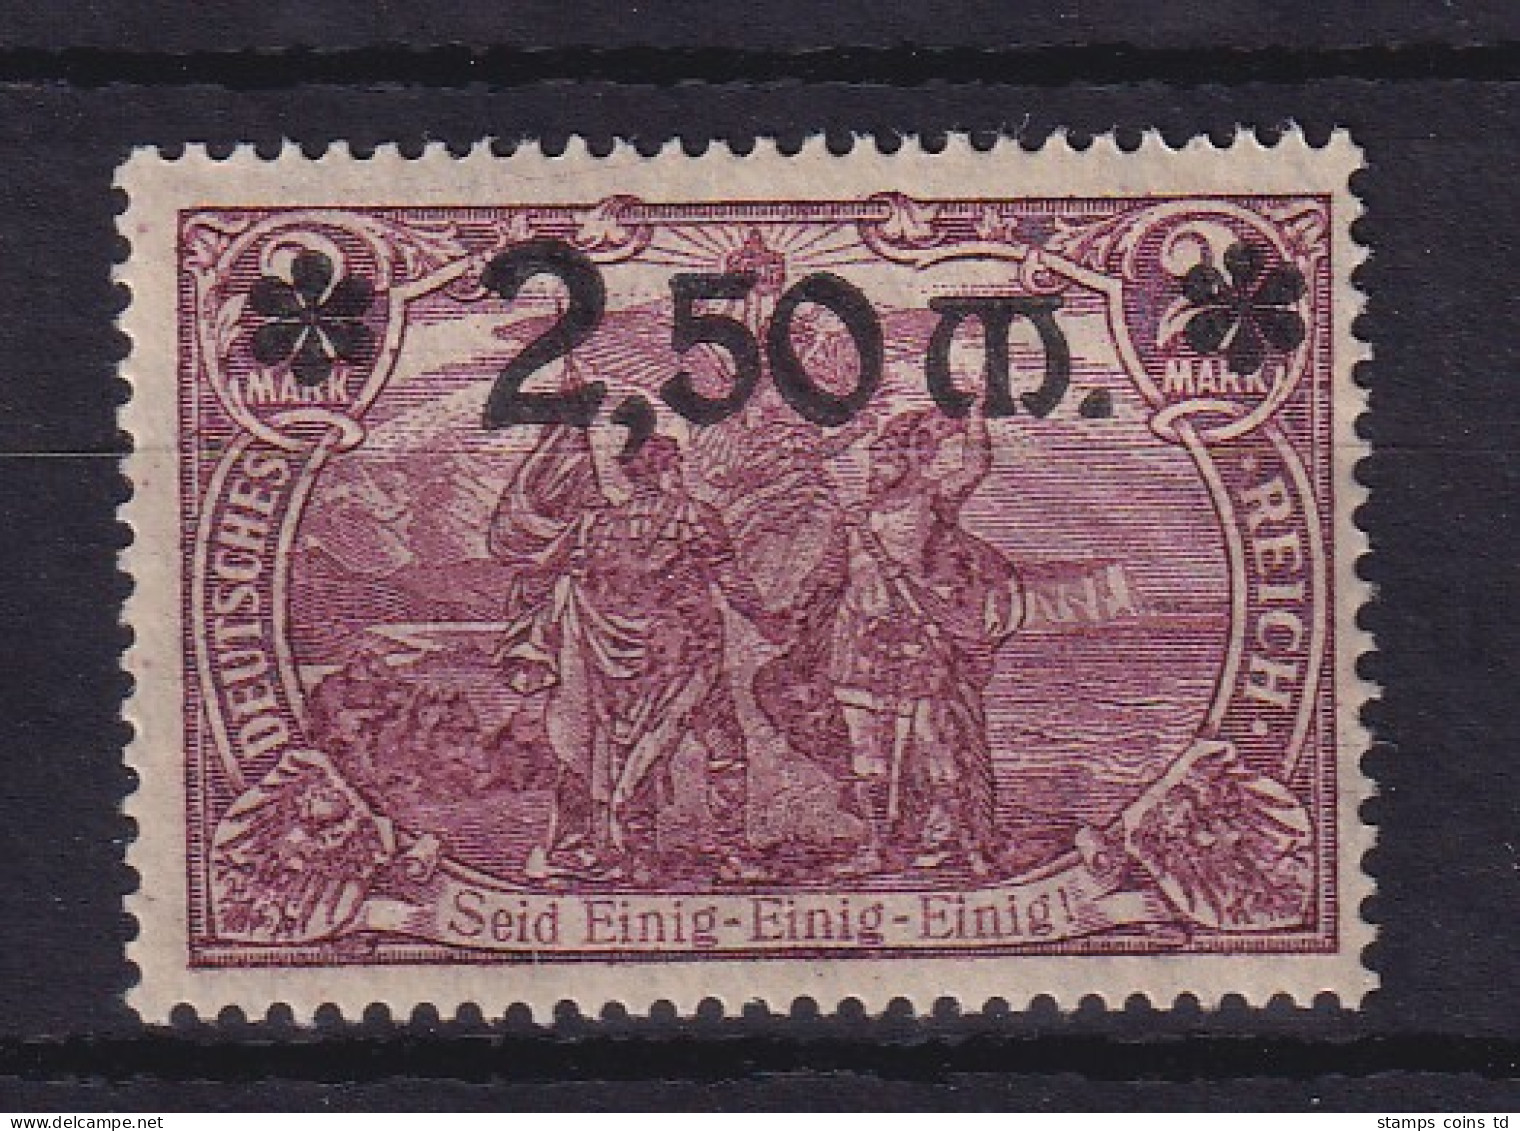 Dt. Reich 1920 Wertaufdruck 2,50 M  Mi.-Nr. 118a Postfrisch ** - Nuovi